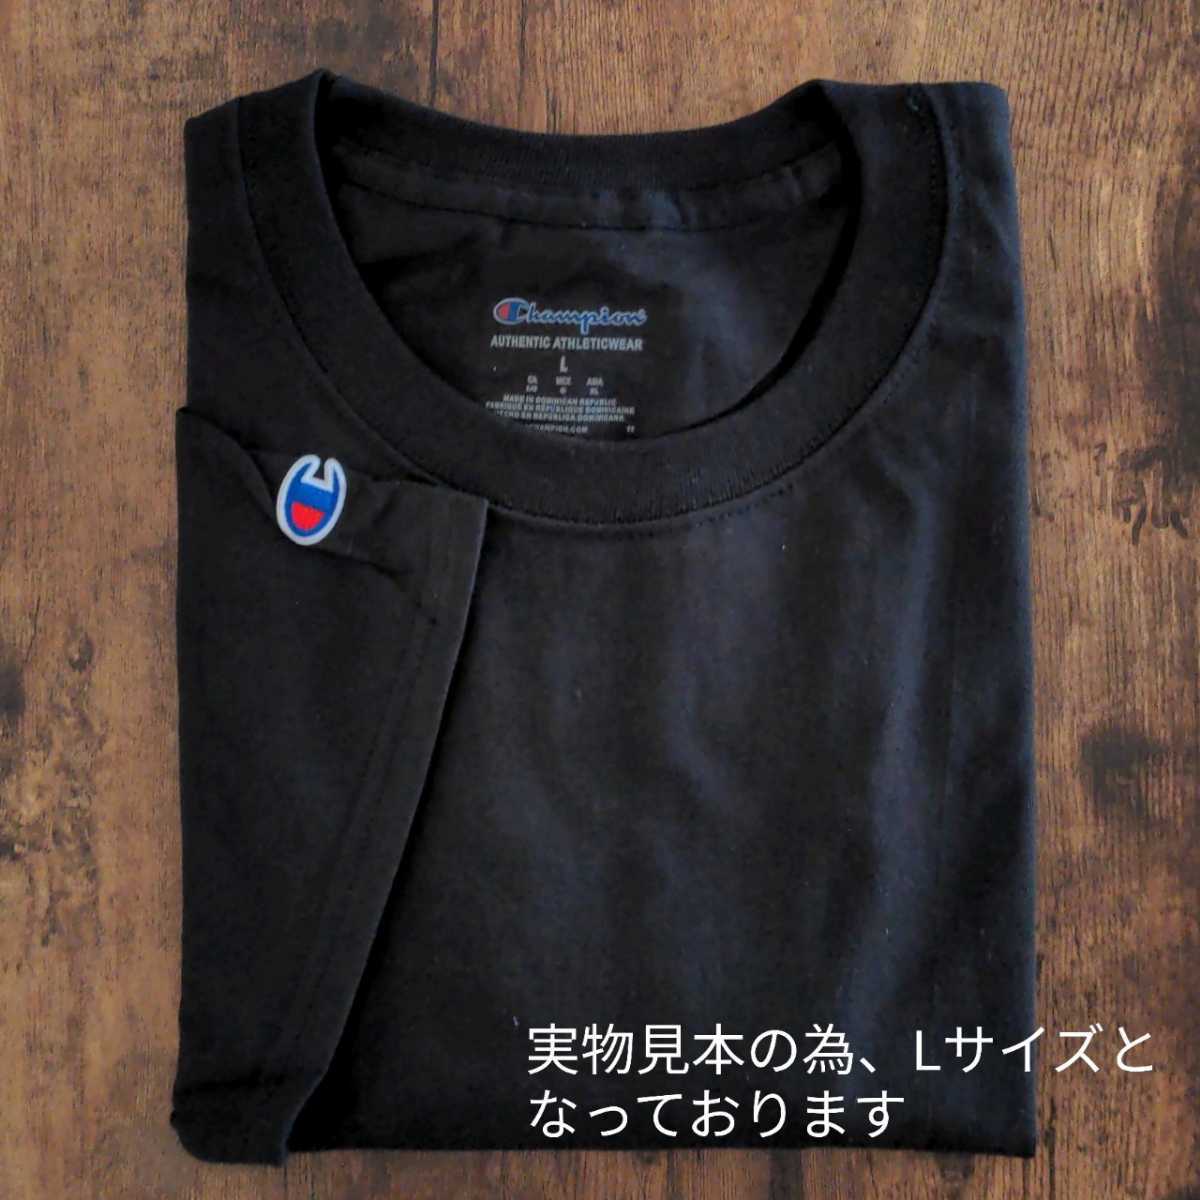 新品未使用 チャンピオン 無地 クルーネック Tシャツ ブラック Sサイズ Champion T425_画像9